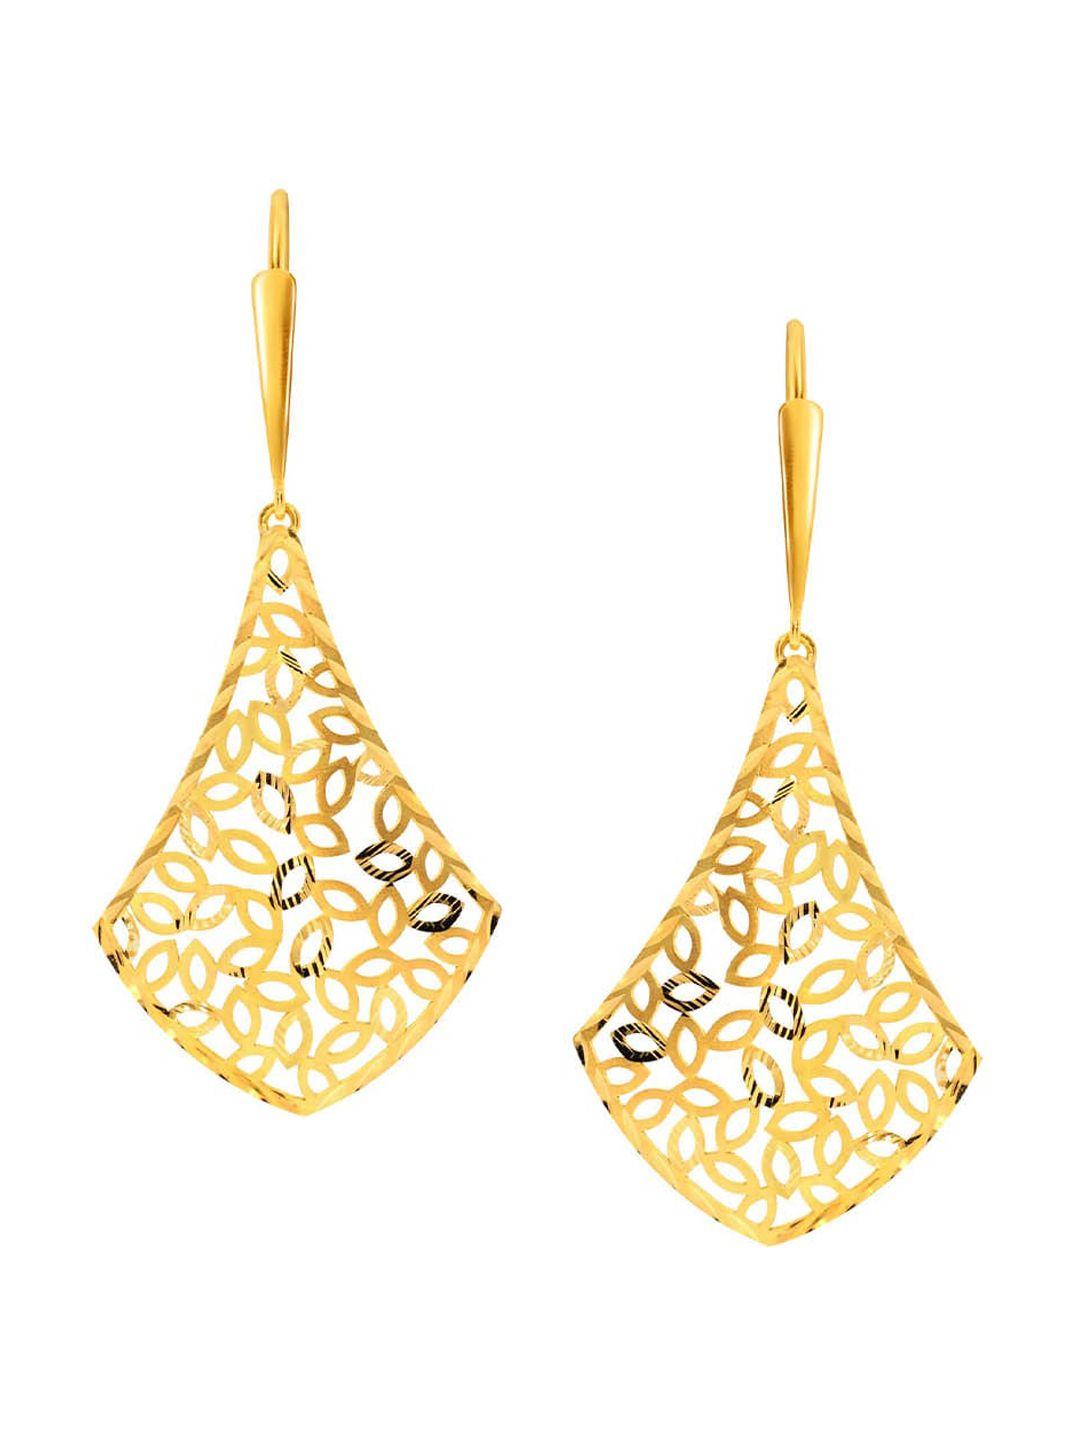 senco foliate 18kt drop gold earrings-3.4gm